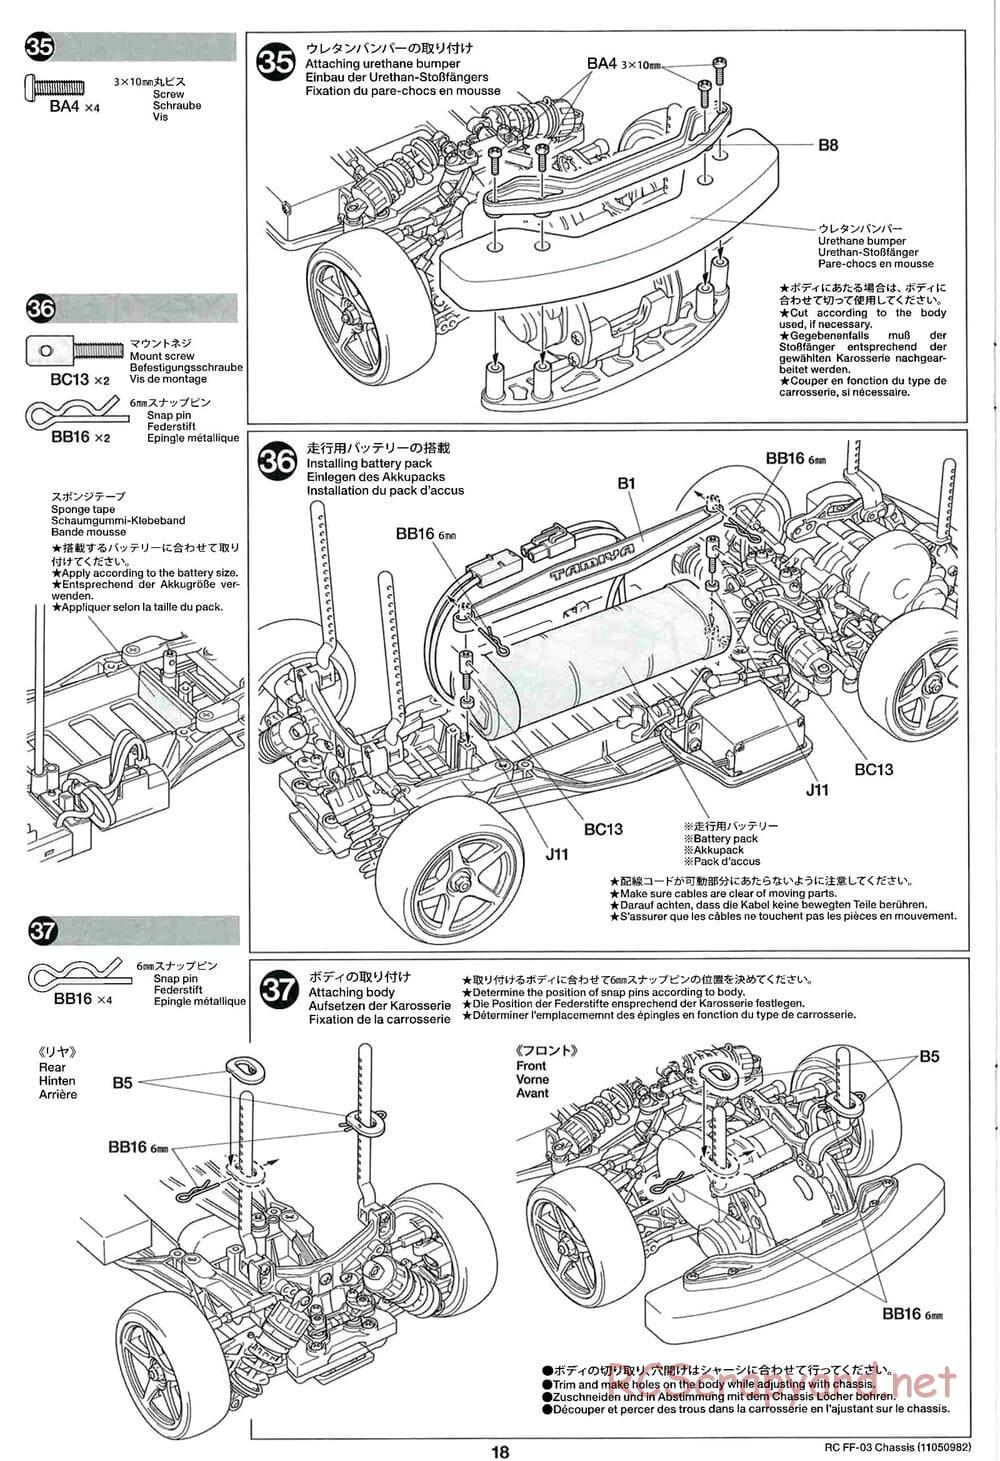 Tamiya - Castrol Honda Civic VTi - FF-03 Chassis - Manual - Page 18